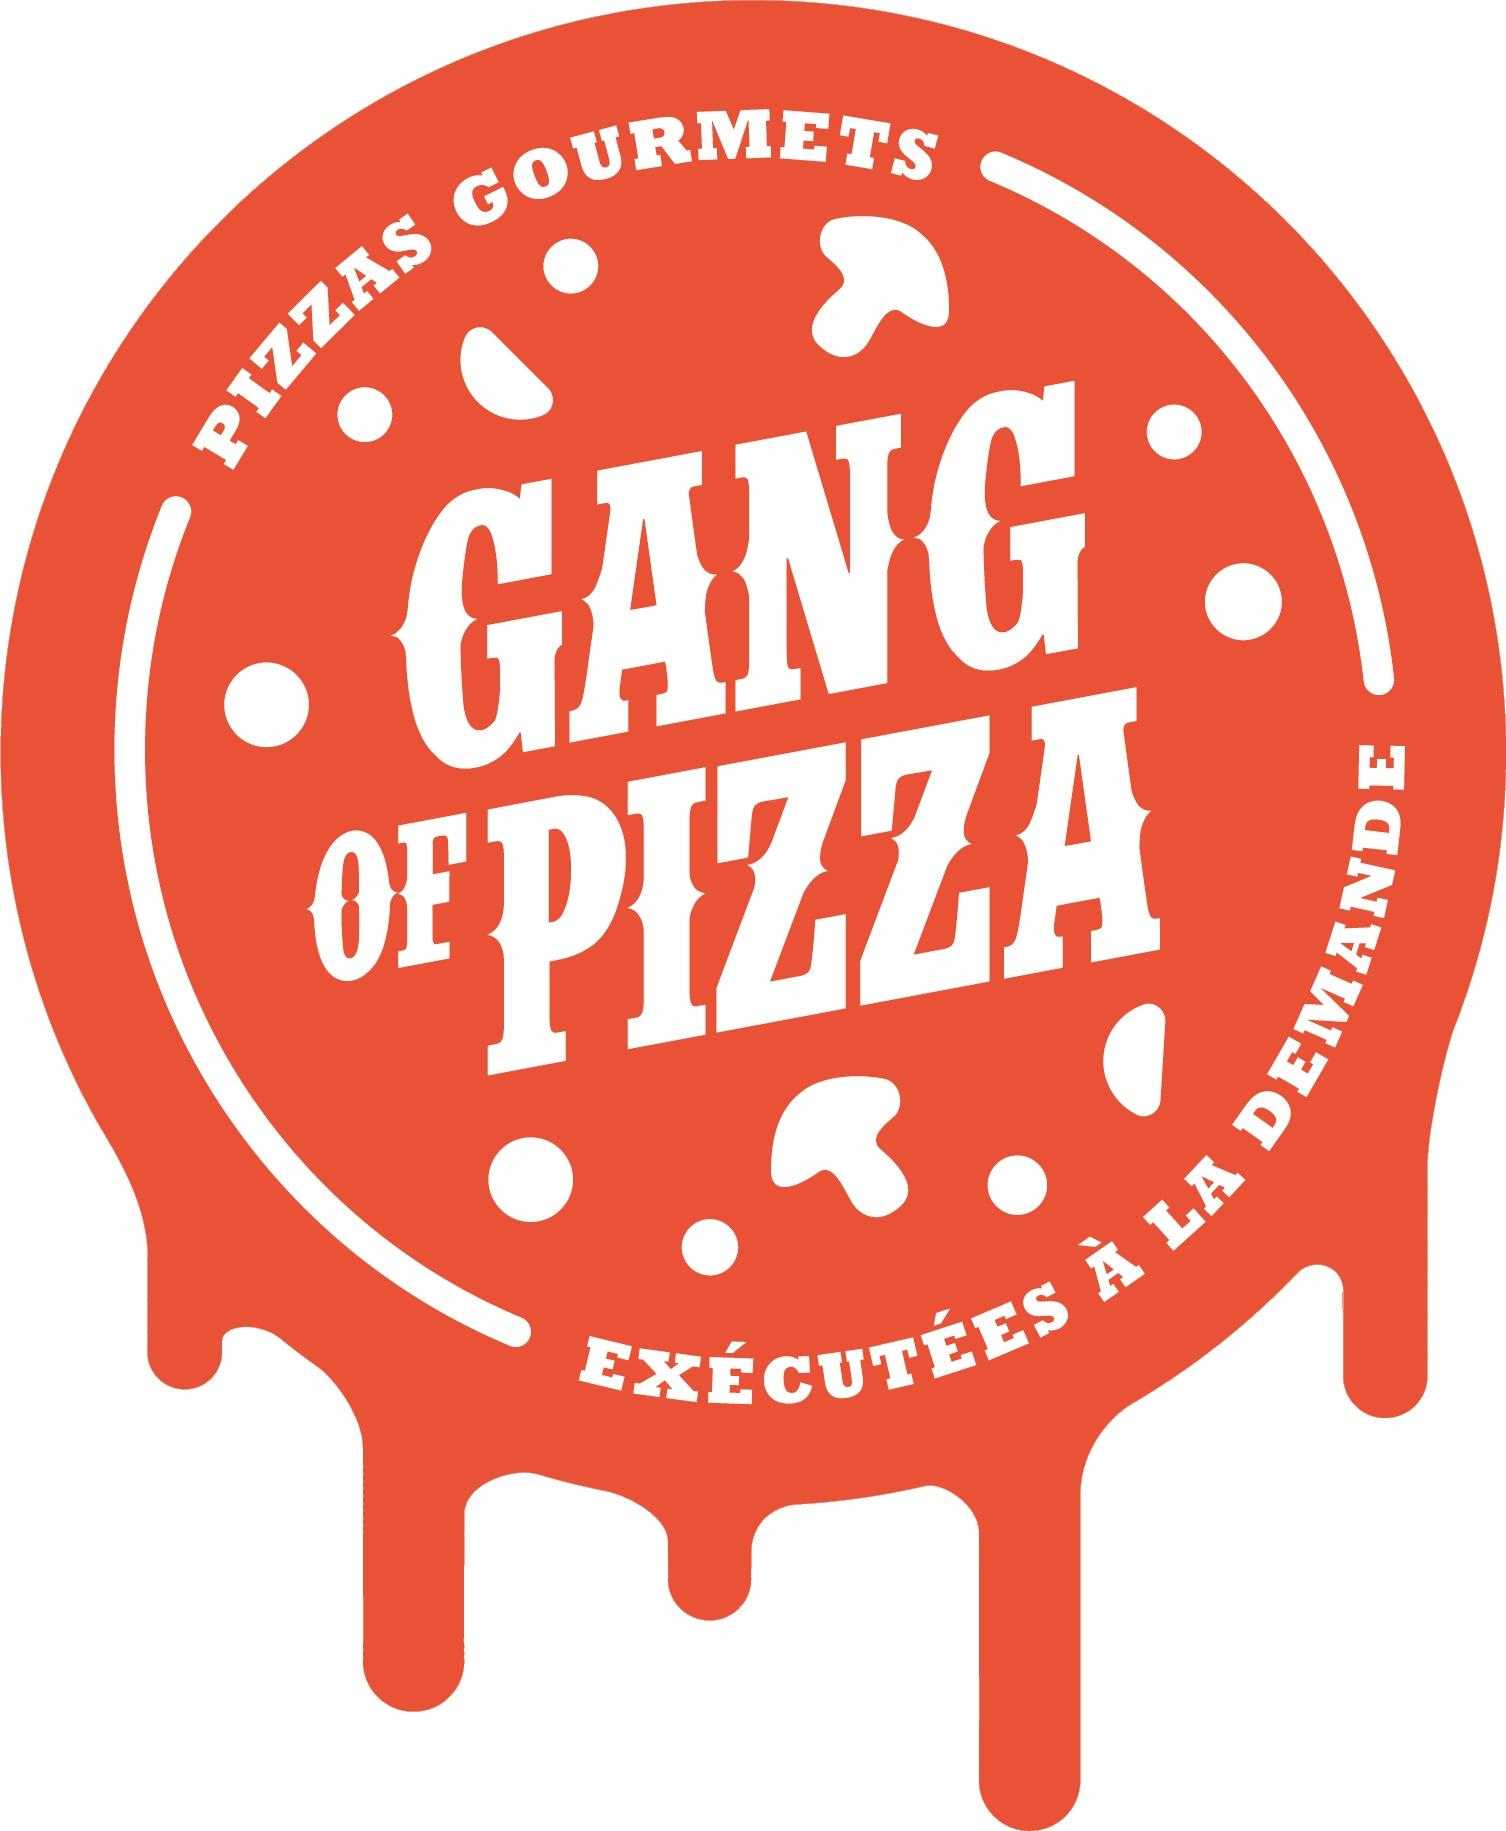 Gang Of Pizza Senones